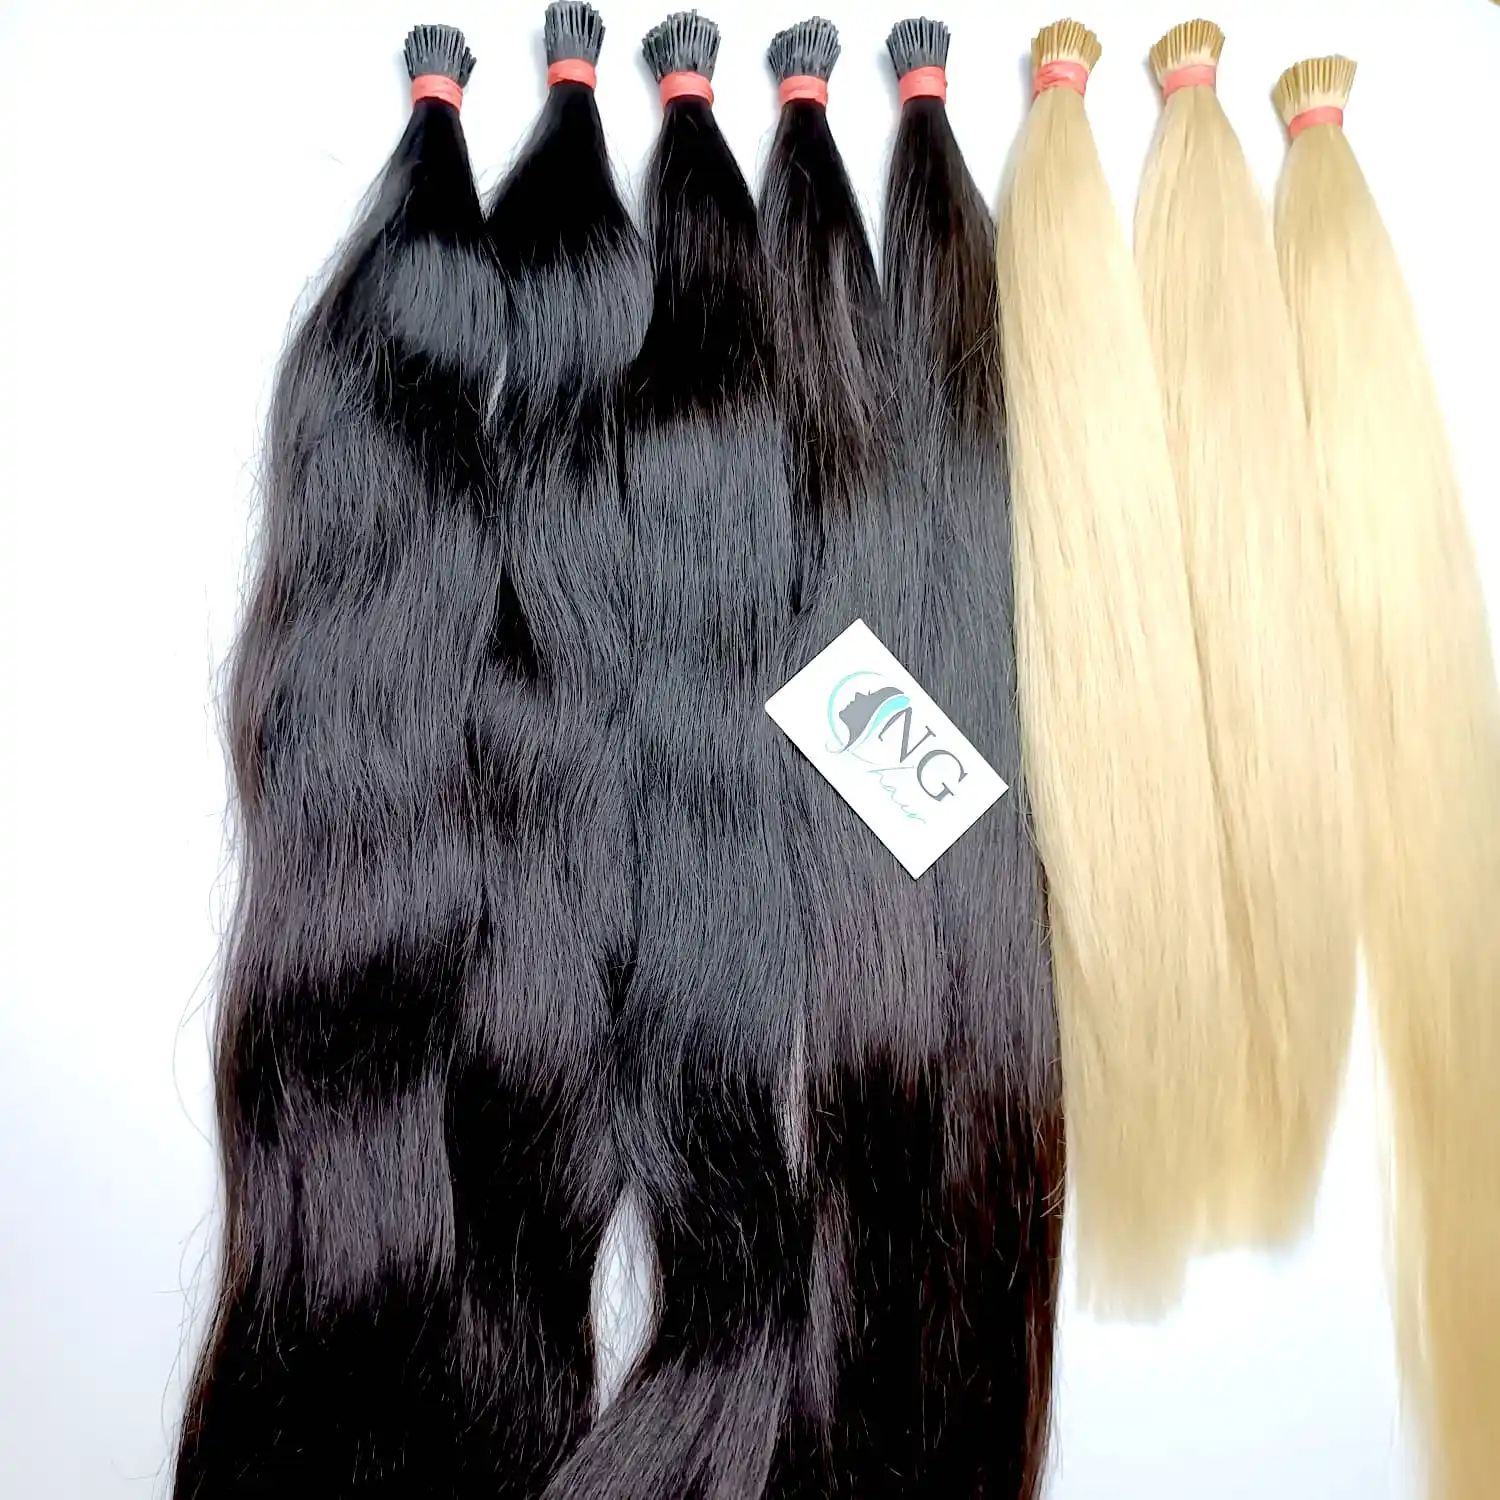 NG волосы для продажи, как никогда не раньше прямые I-тип наращивания волос, 100% вьетнамские человеческие волосы, Супер Гладкие полноцветные.